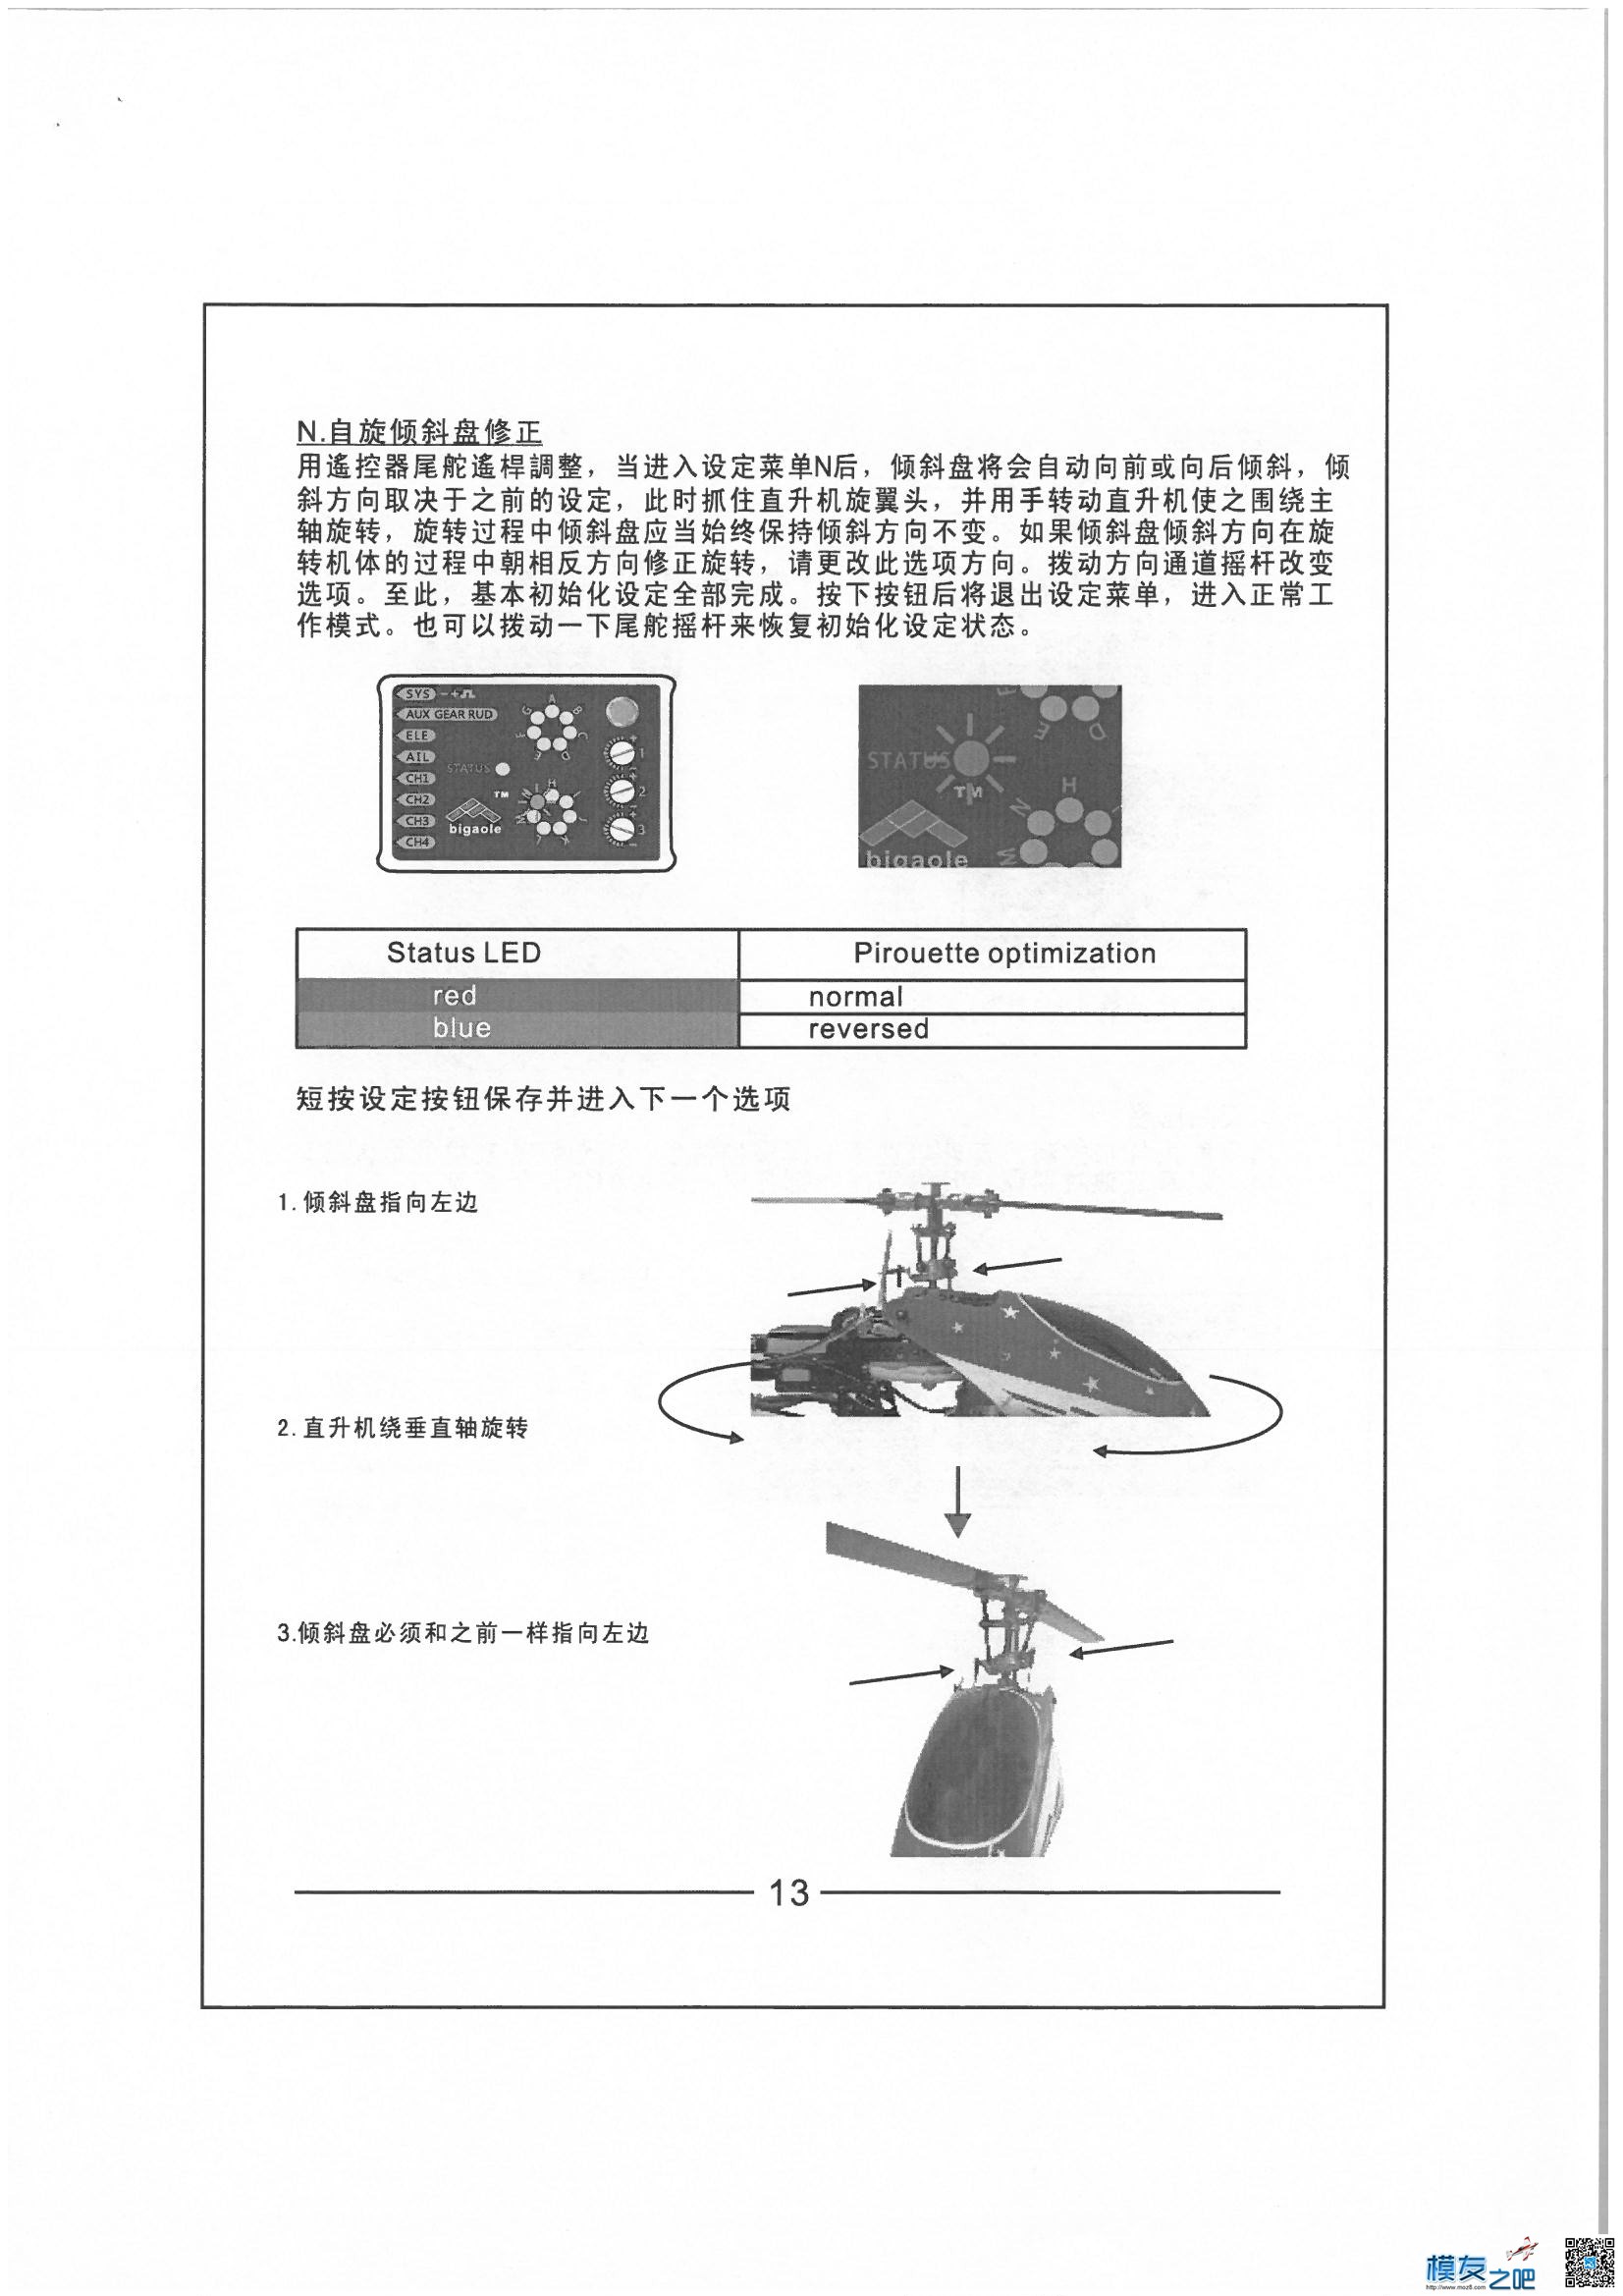 电动直升机 比高乐三轴陀螺仪  BIGAOLE 使用说明书 直升机,说明书,陀螺仪 作者:bobotufu 5711 